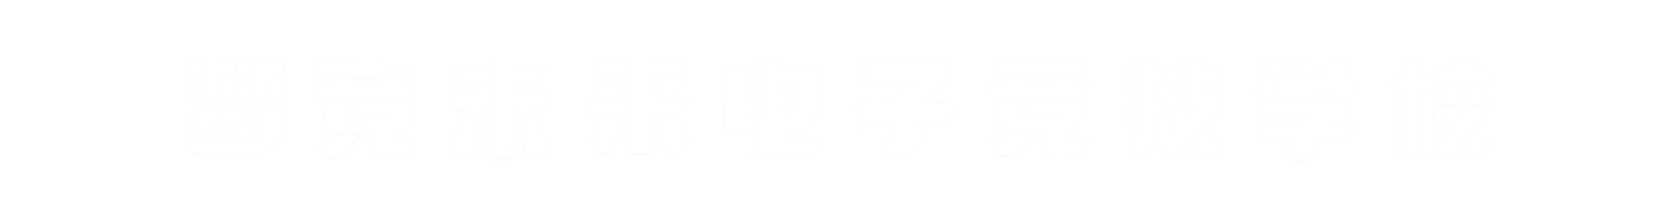 梦竞未来南昌banner字